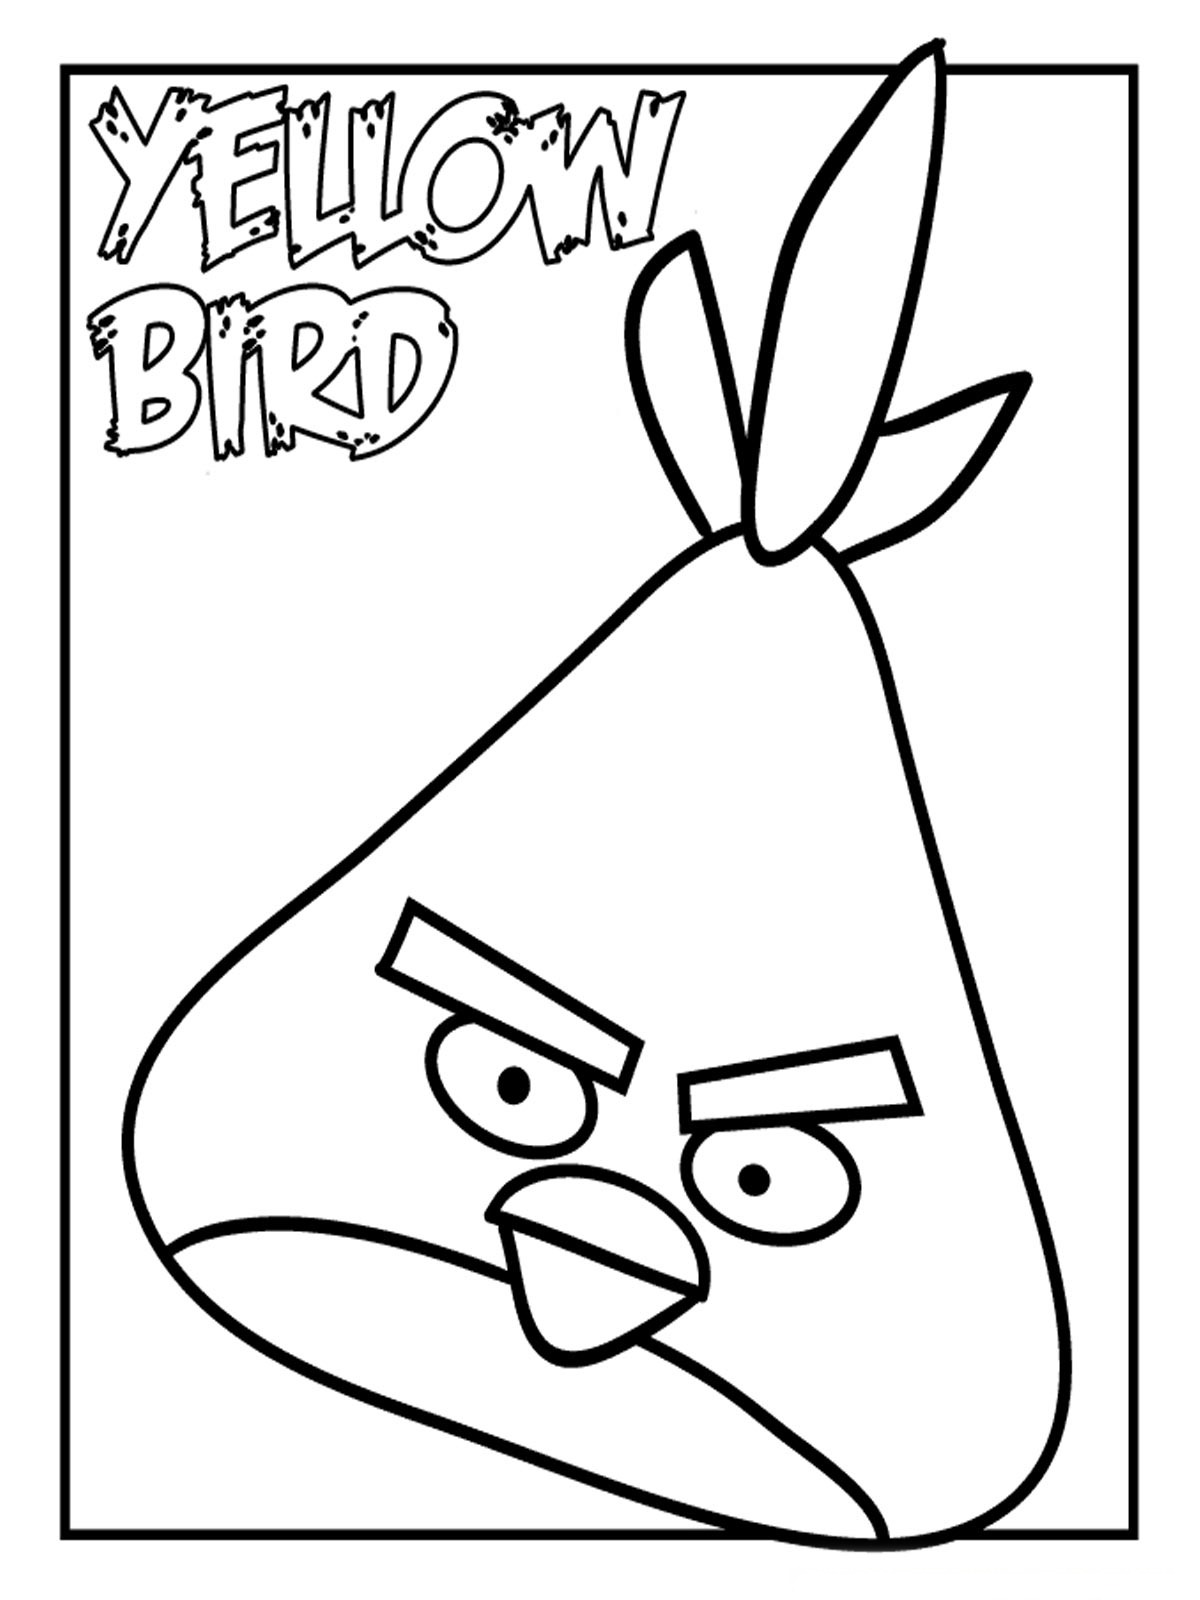 Dessin de angry birds gratuit à imprimer et colorier